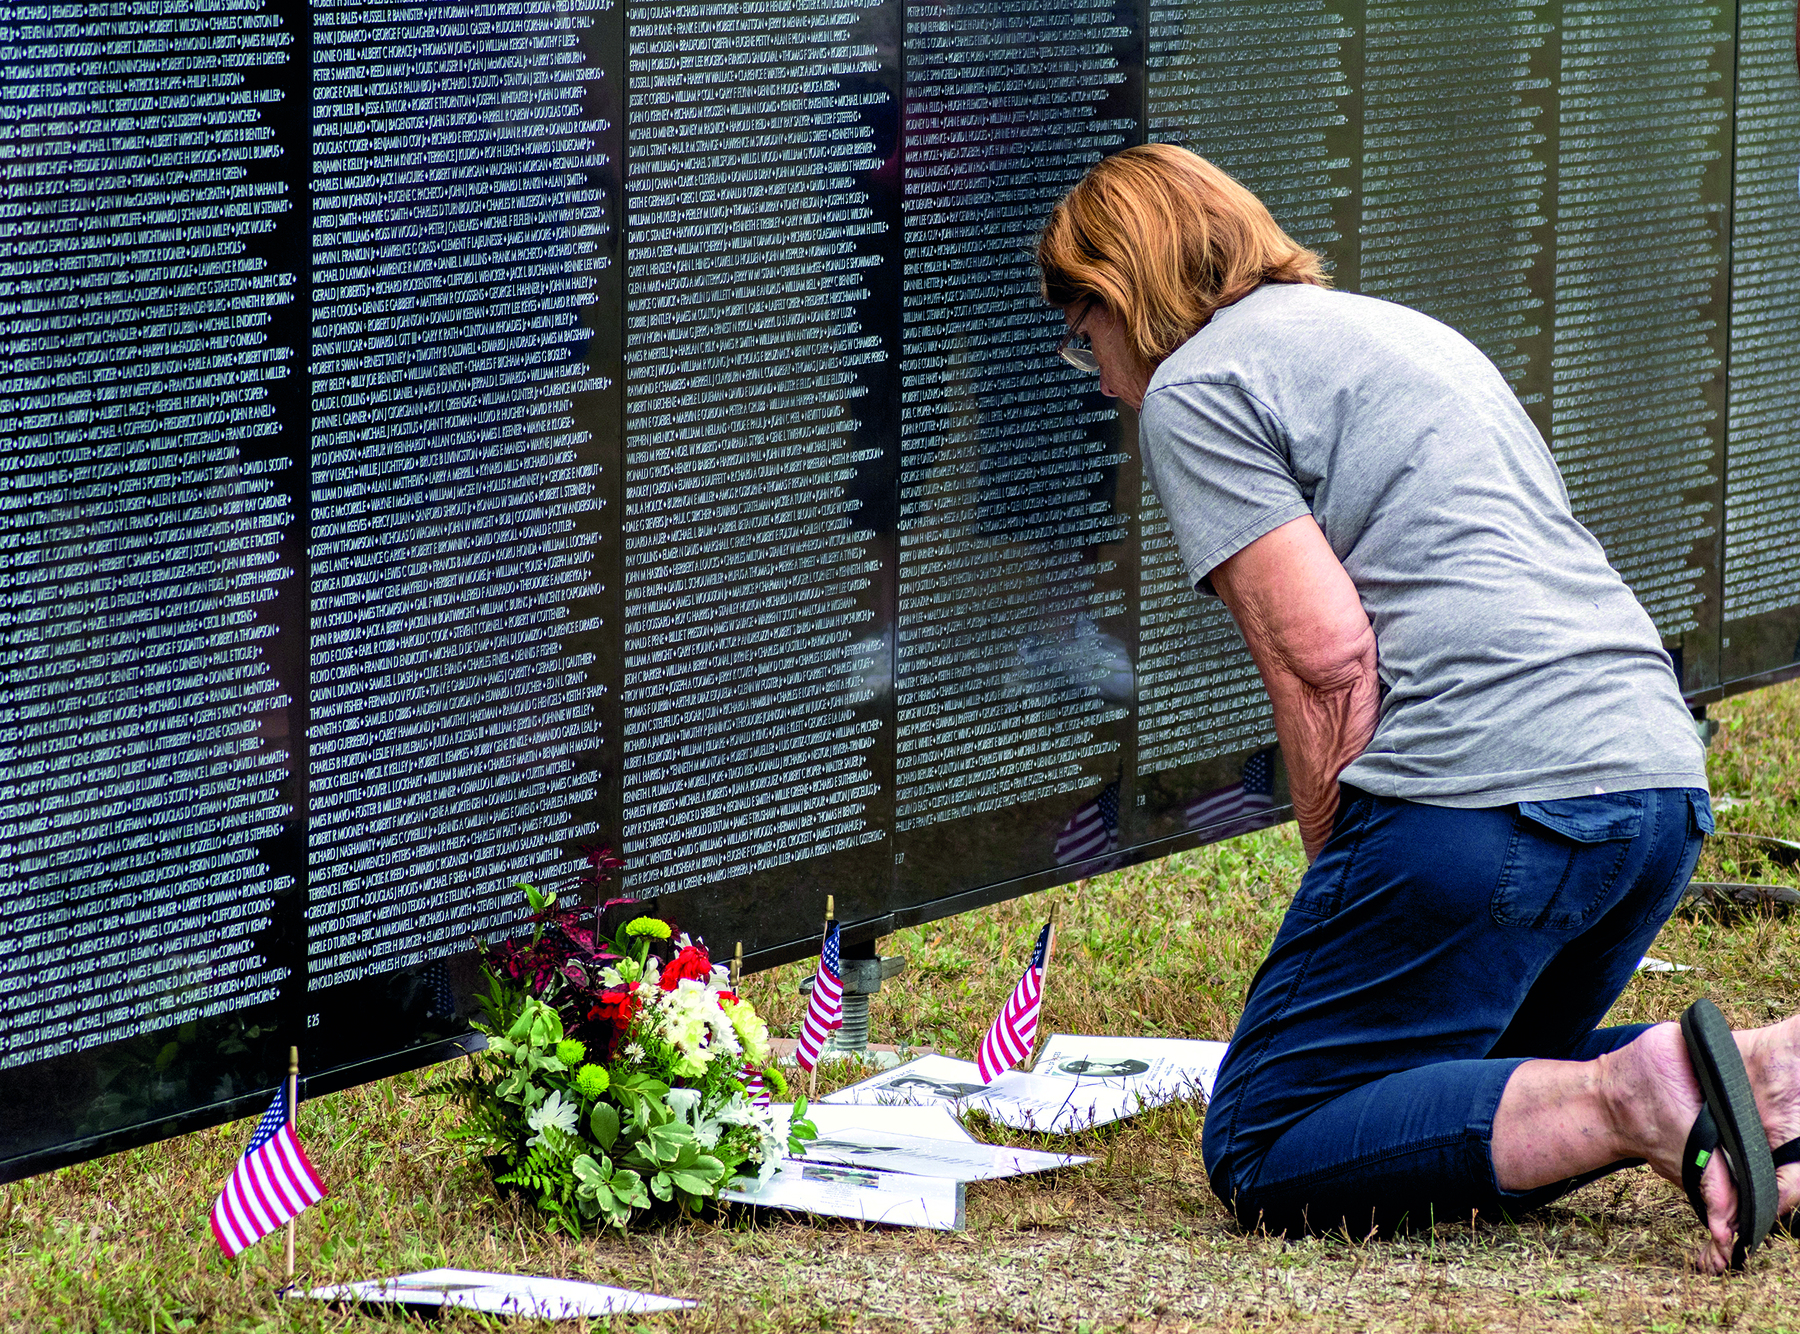 Fotografia. Uma mulher de joelhos diante de uma placa com milhares de nomes escritos. À sua frente, no chão, algumas folhas brancas e três pequenas bandeiras dos Estados Unidos. Entre as bandeiras, um buquê com flores em vermelho, branco e folhas verdes.